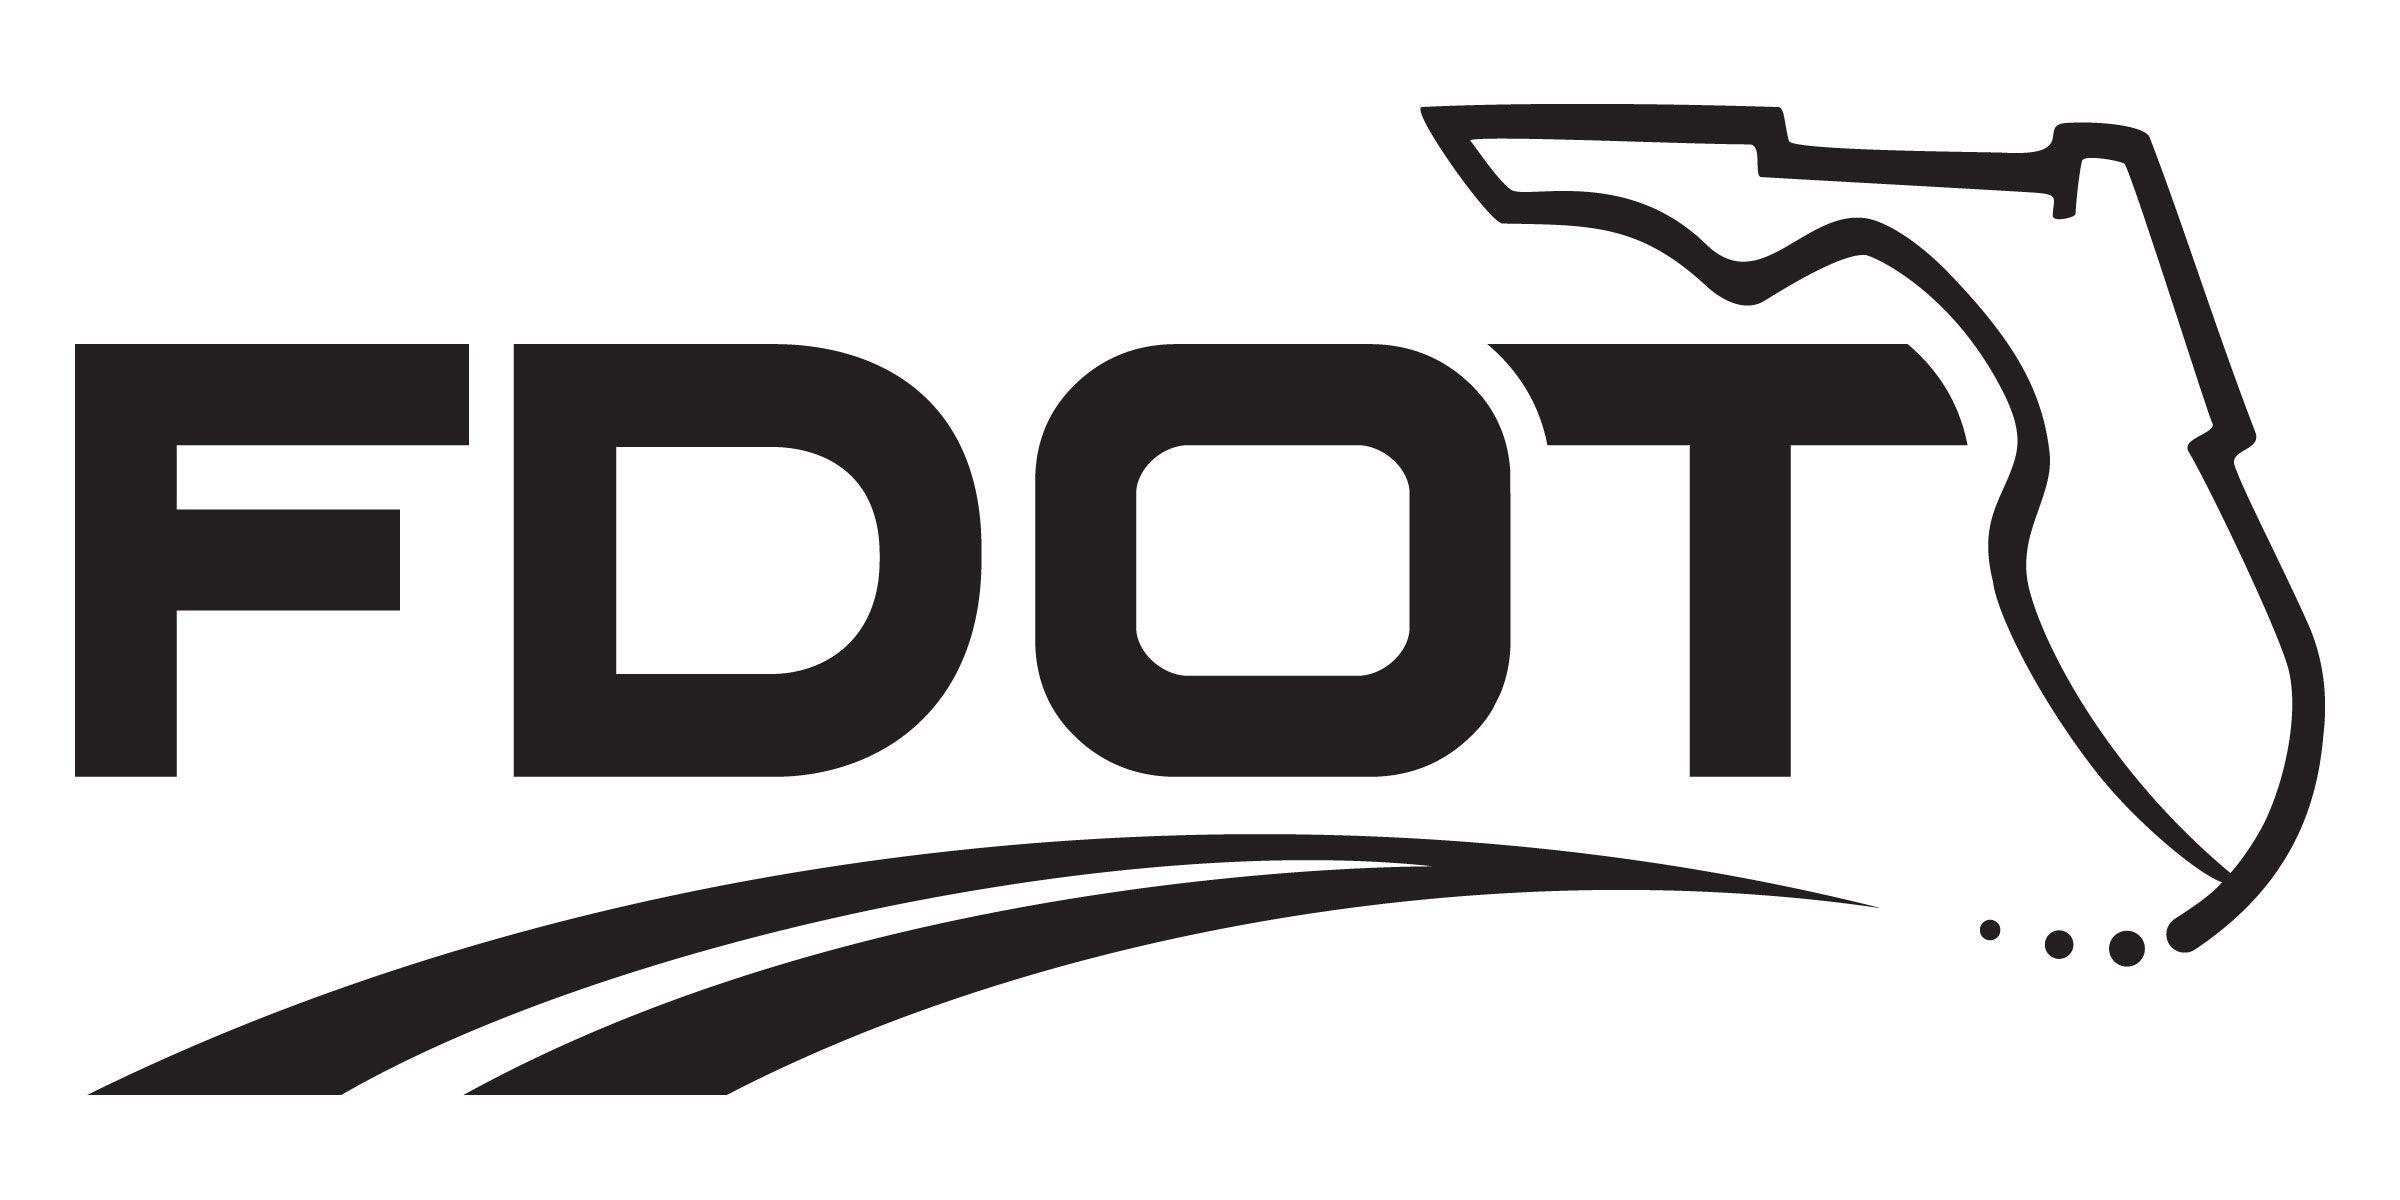 Florida Dot Logo - FDOT Logos